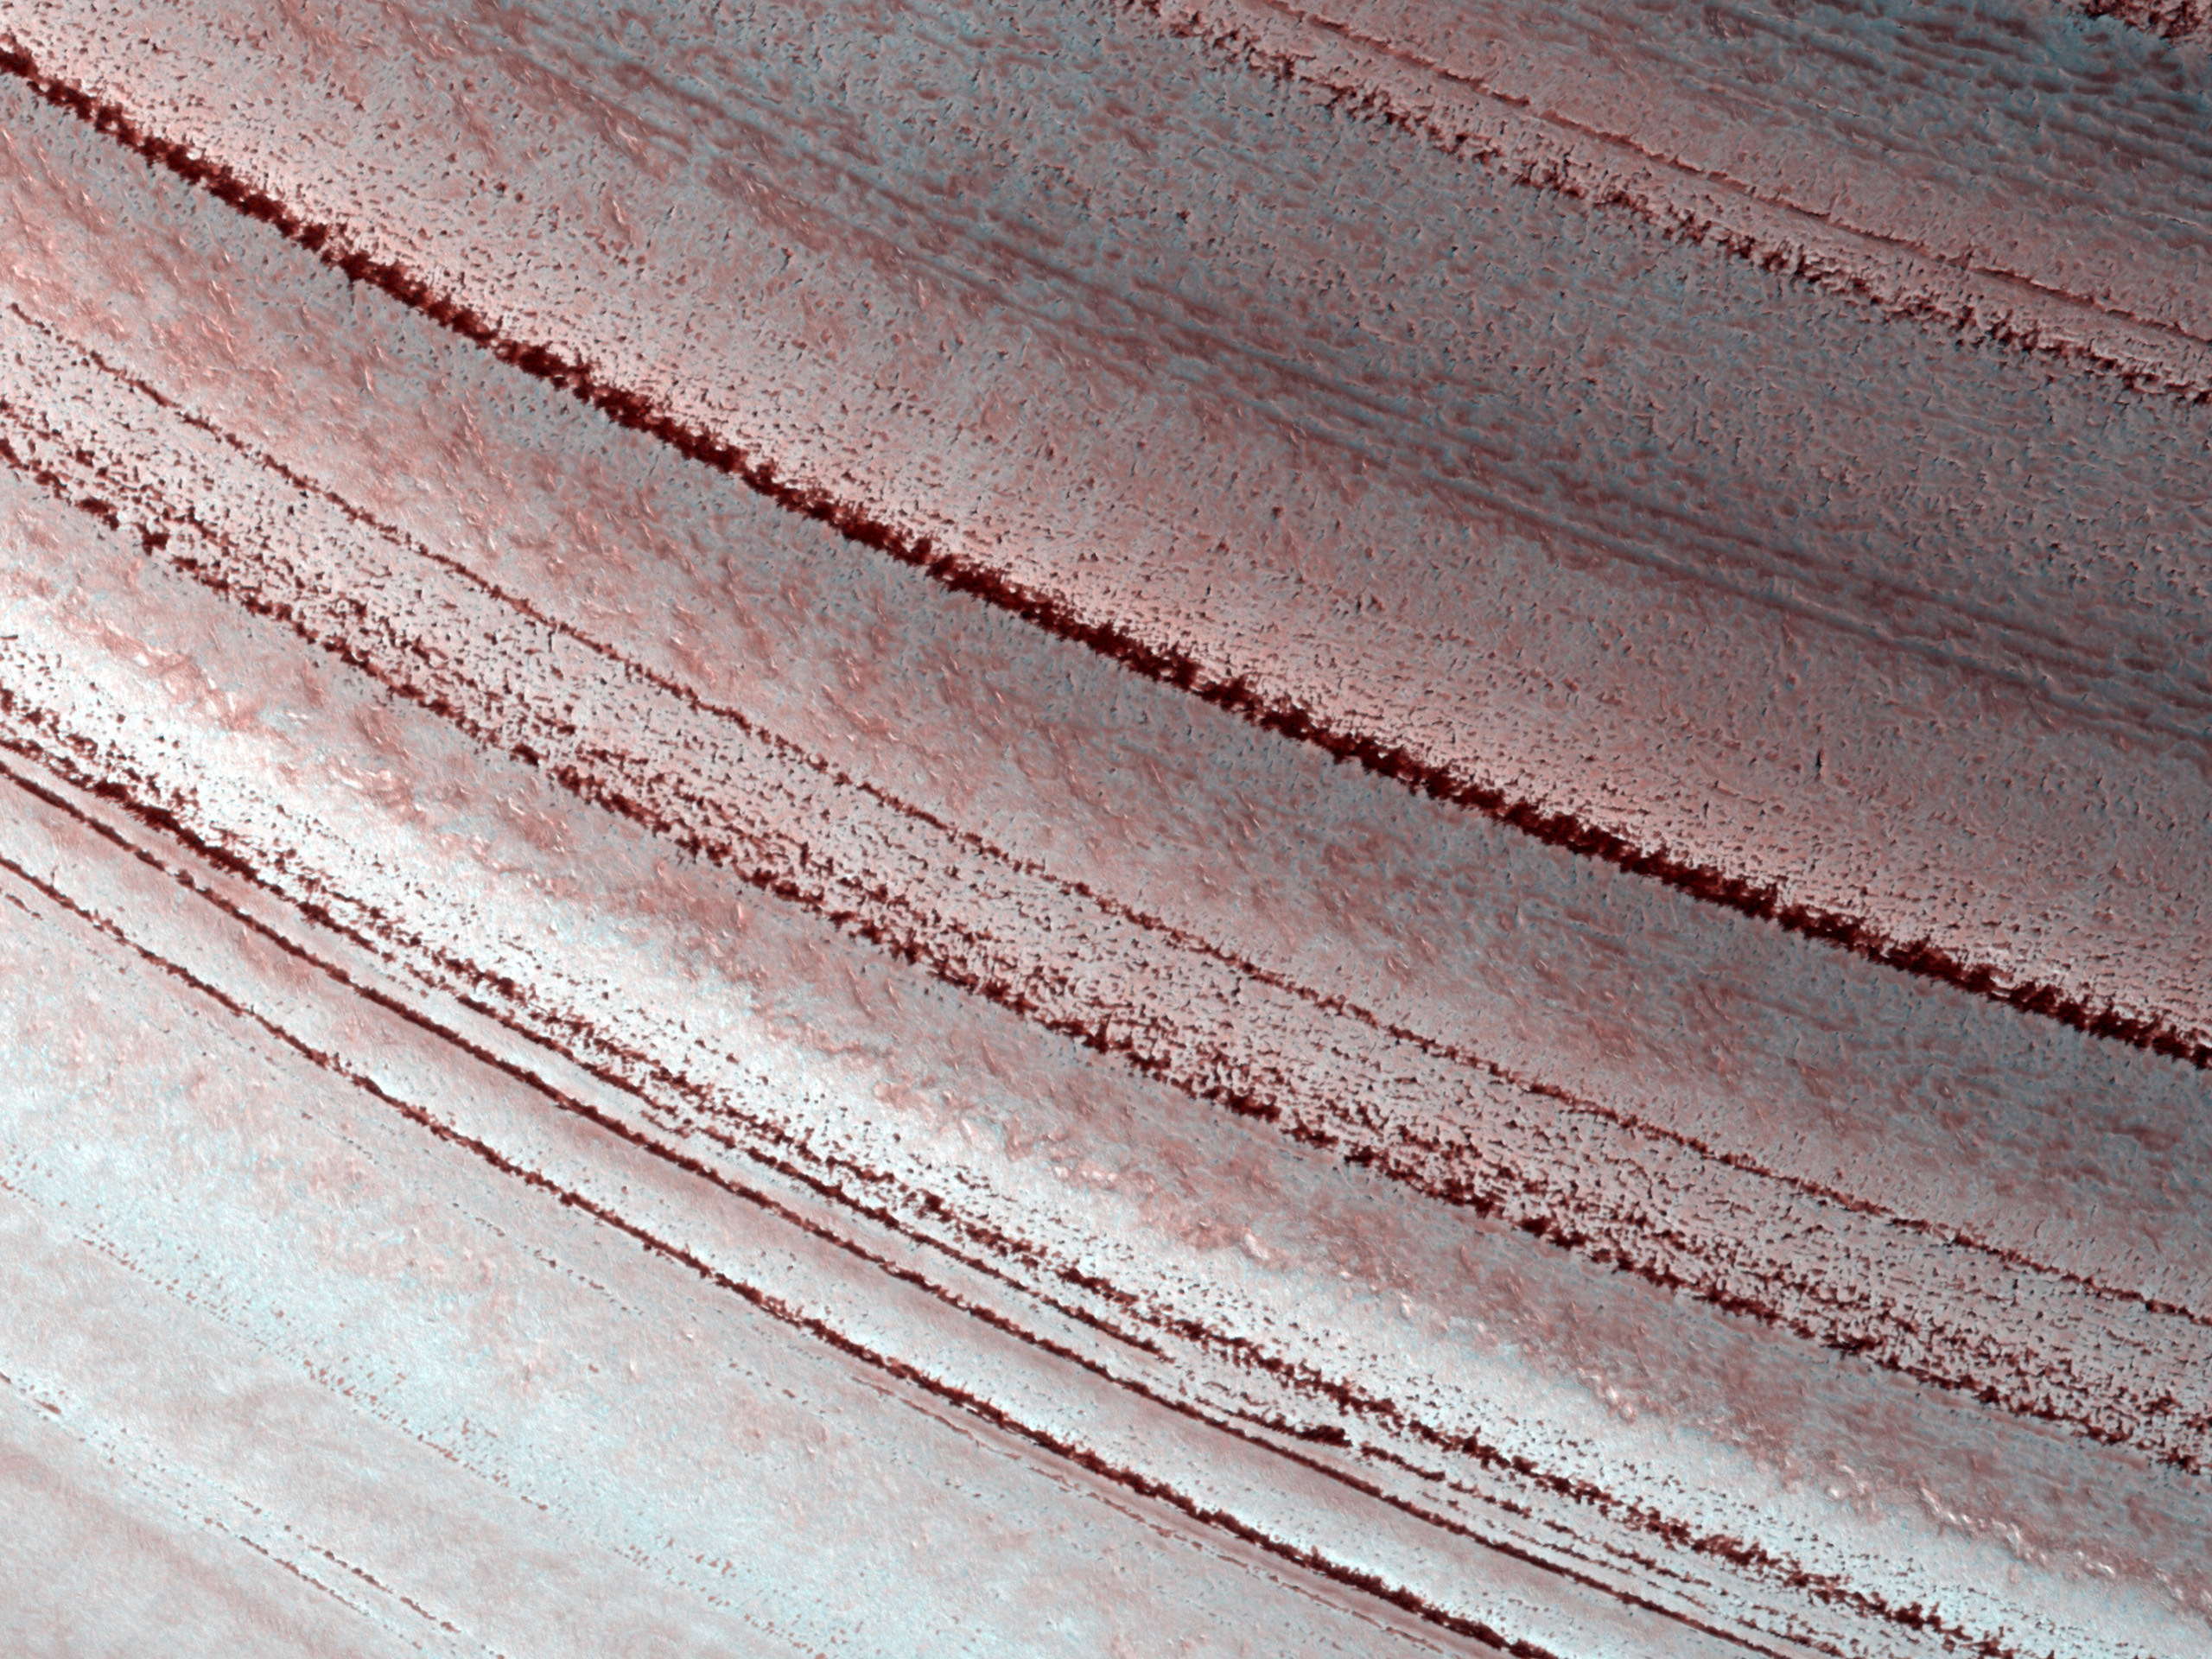 Capas heladas y fluctuaciones climticas en el Polo Norte de Marte